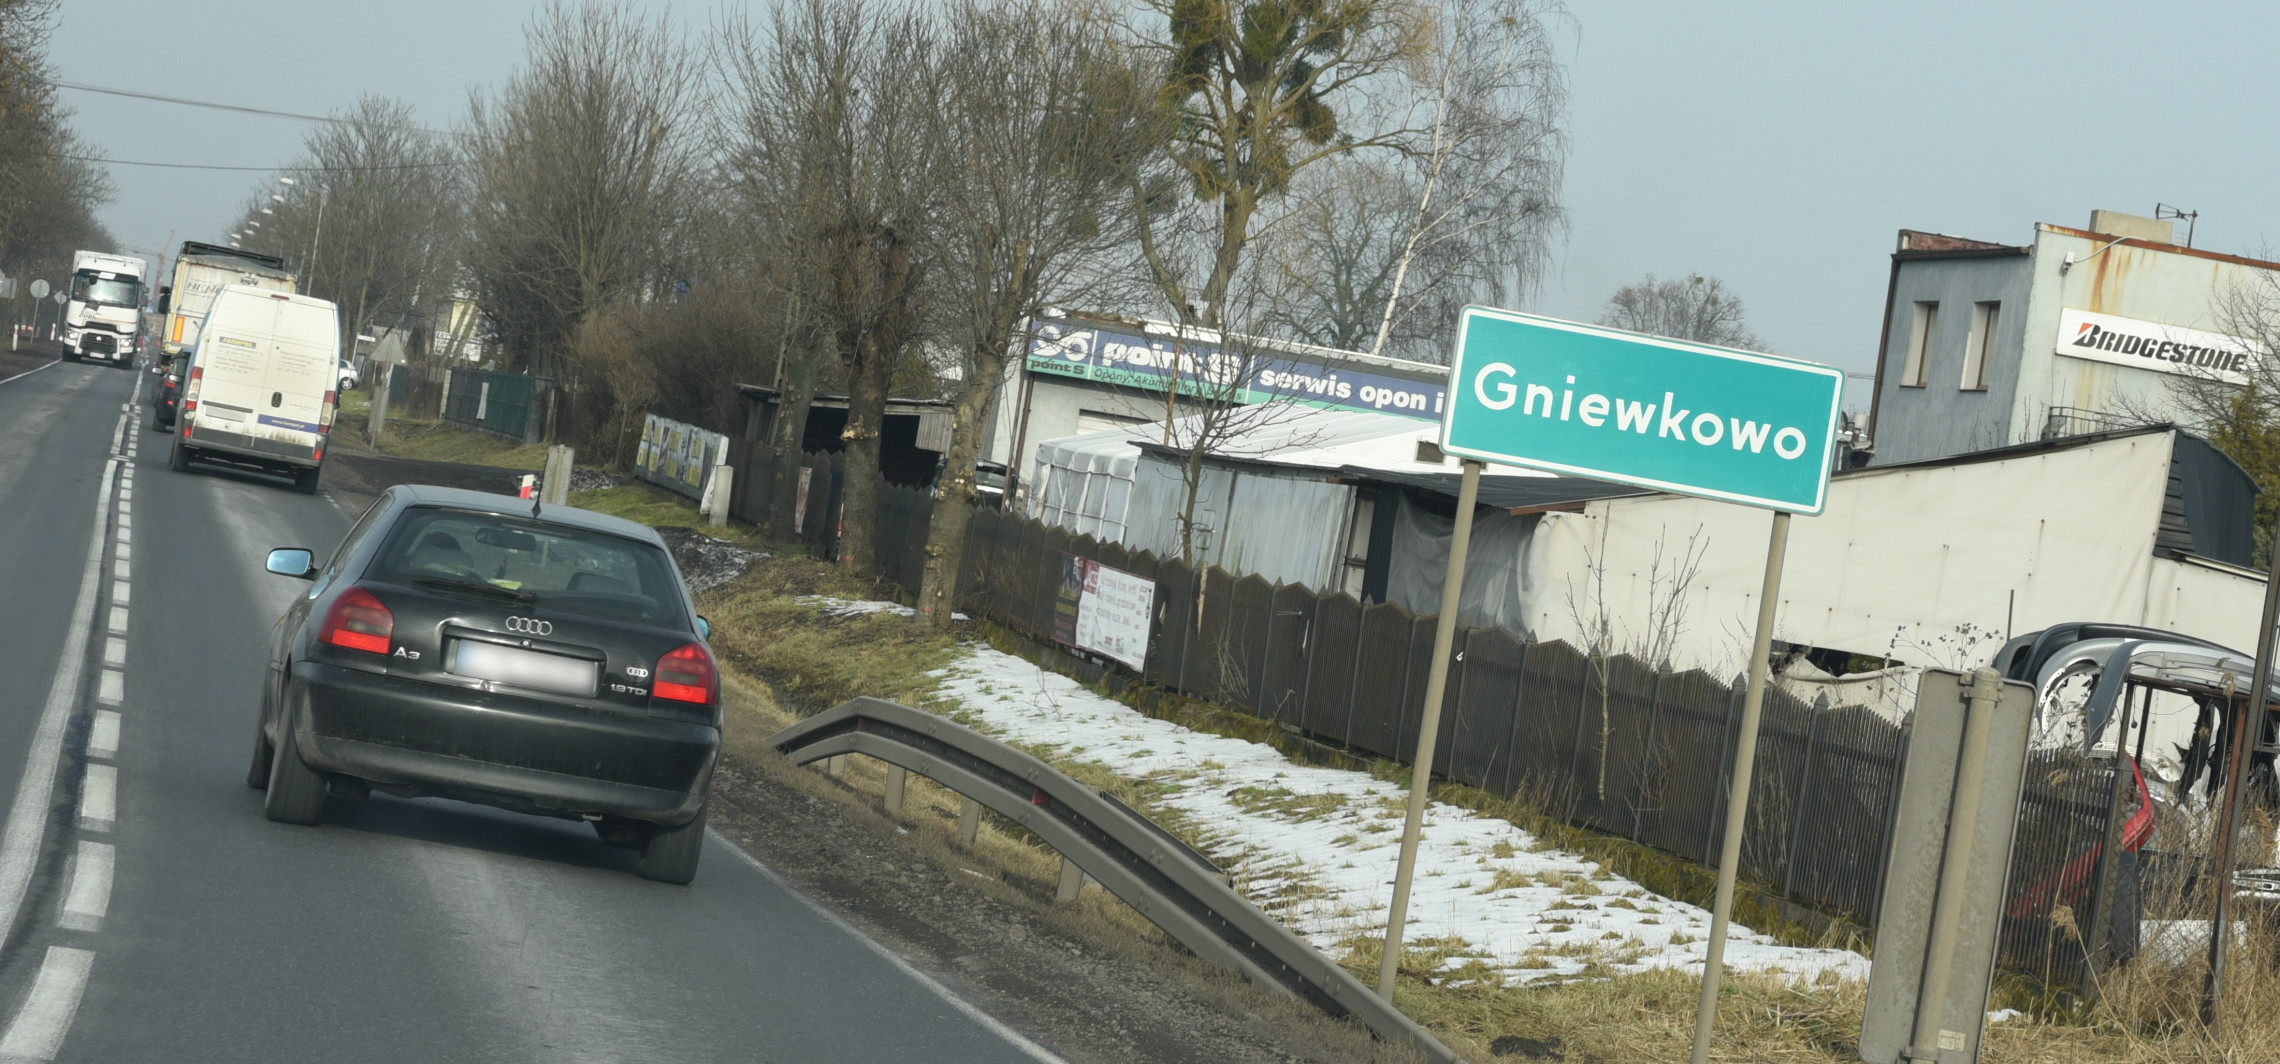 Inowrocław - Kierowcy tracą prawa jazdy. Powodem prędkość